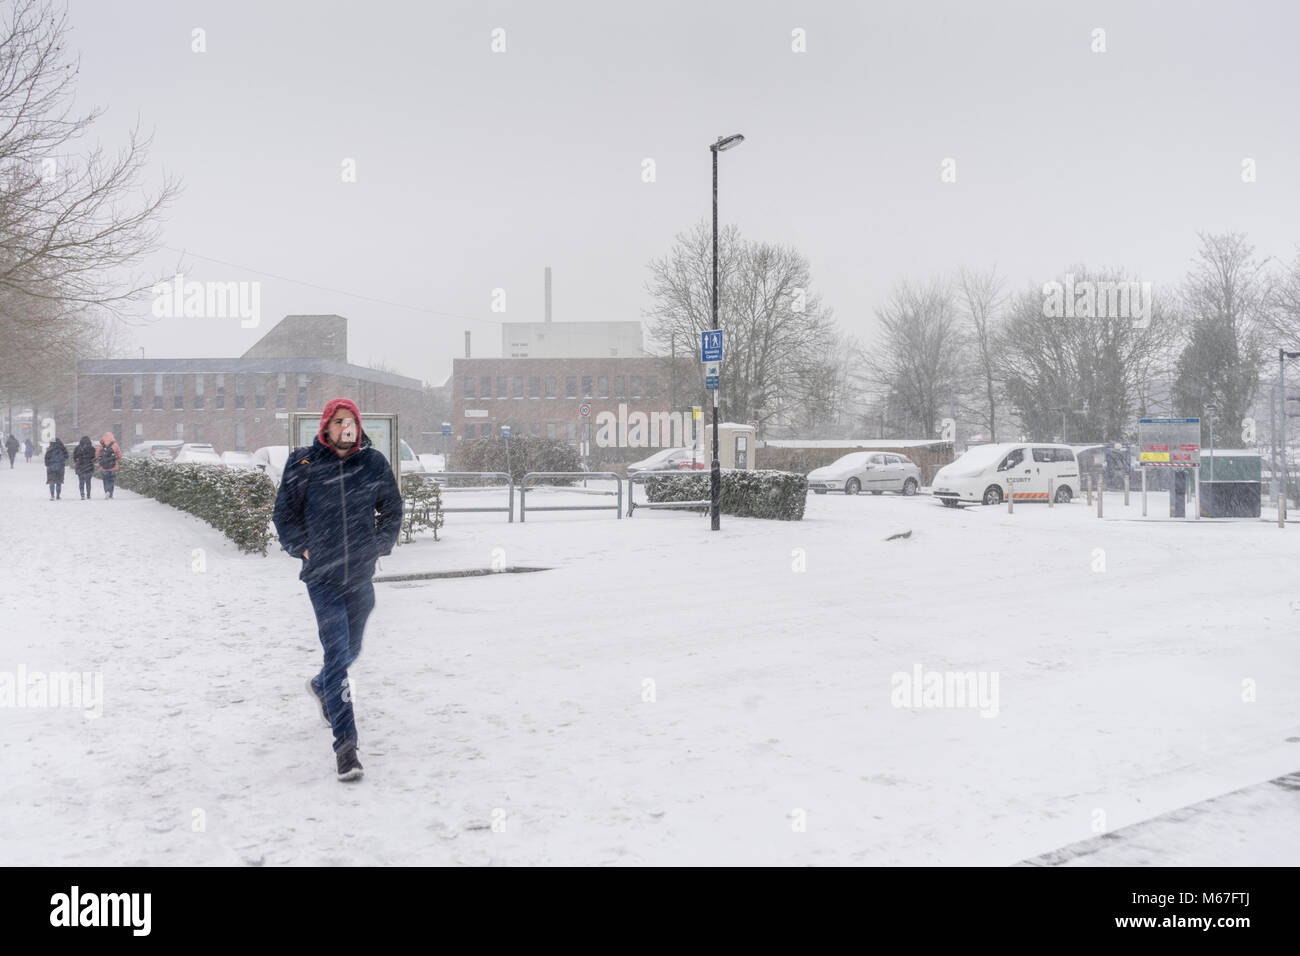 Southampton, Großbritannien. März 2018. Aufgrund des starken Schnees hat die Universität Southampton (England, UK) für den Rest des Tages und morgen wegen widriger und gefährlicher Wetterbedingungen geschlossen. Stockfoto